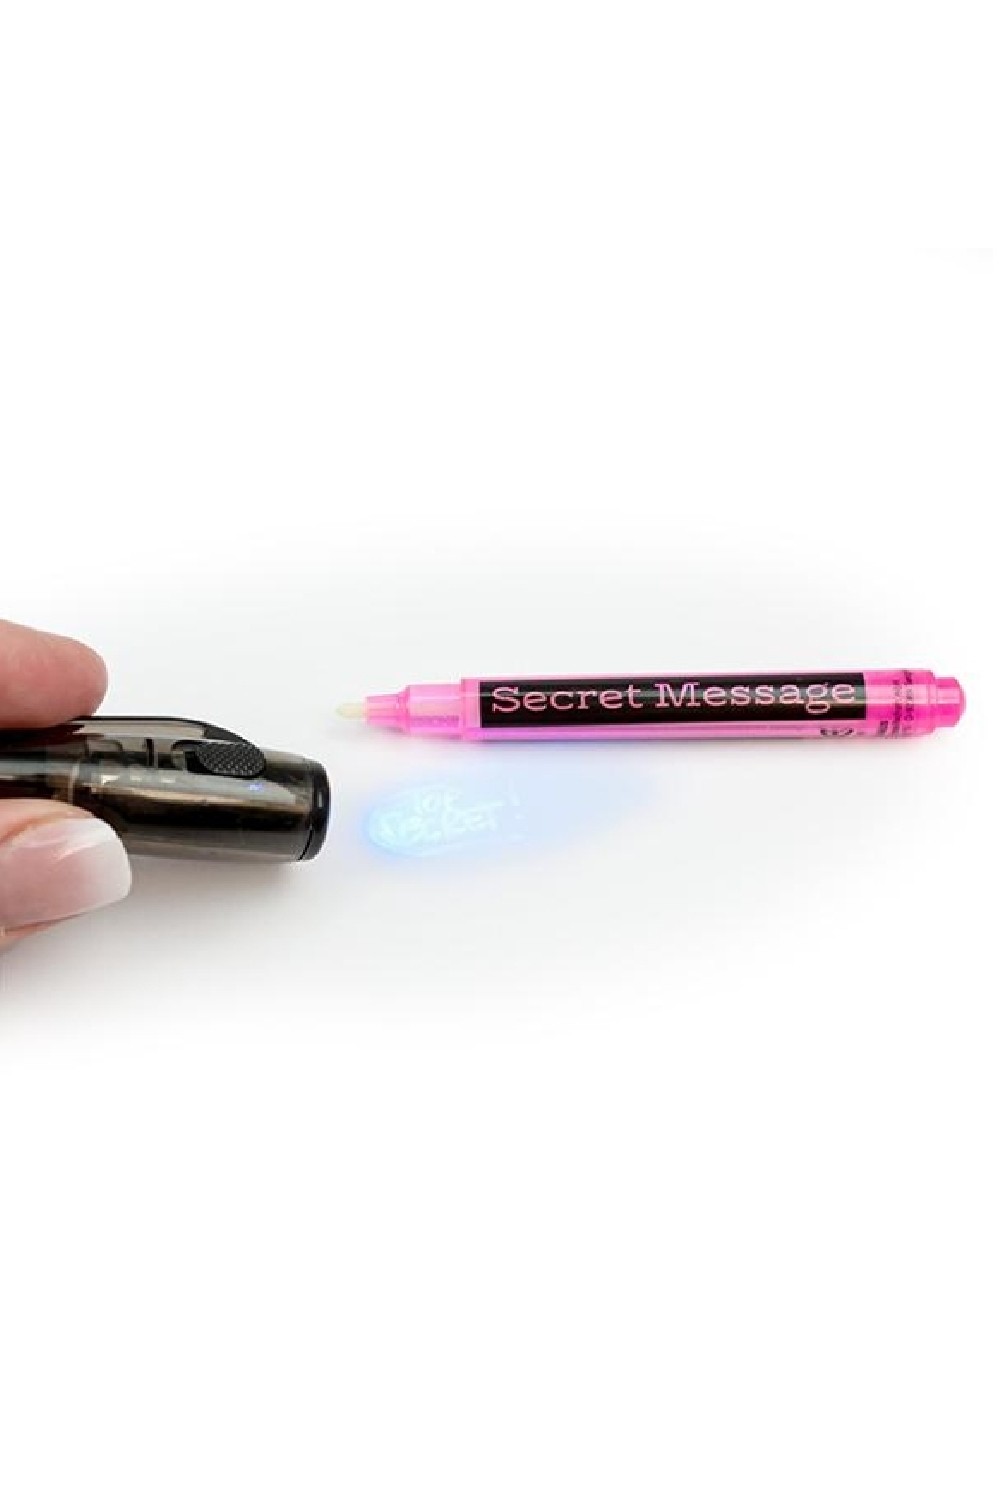 Μαγικό στυλό Secret Message